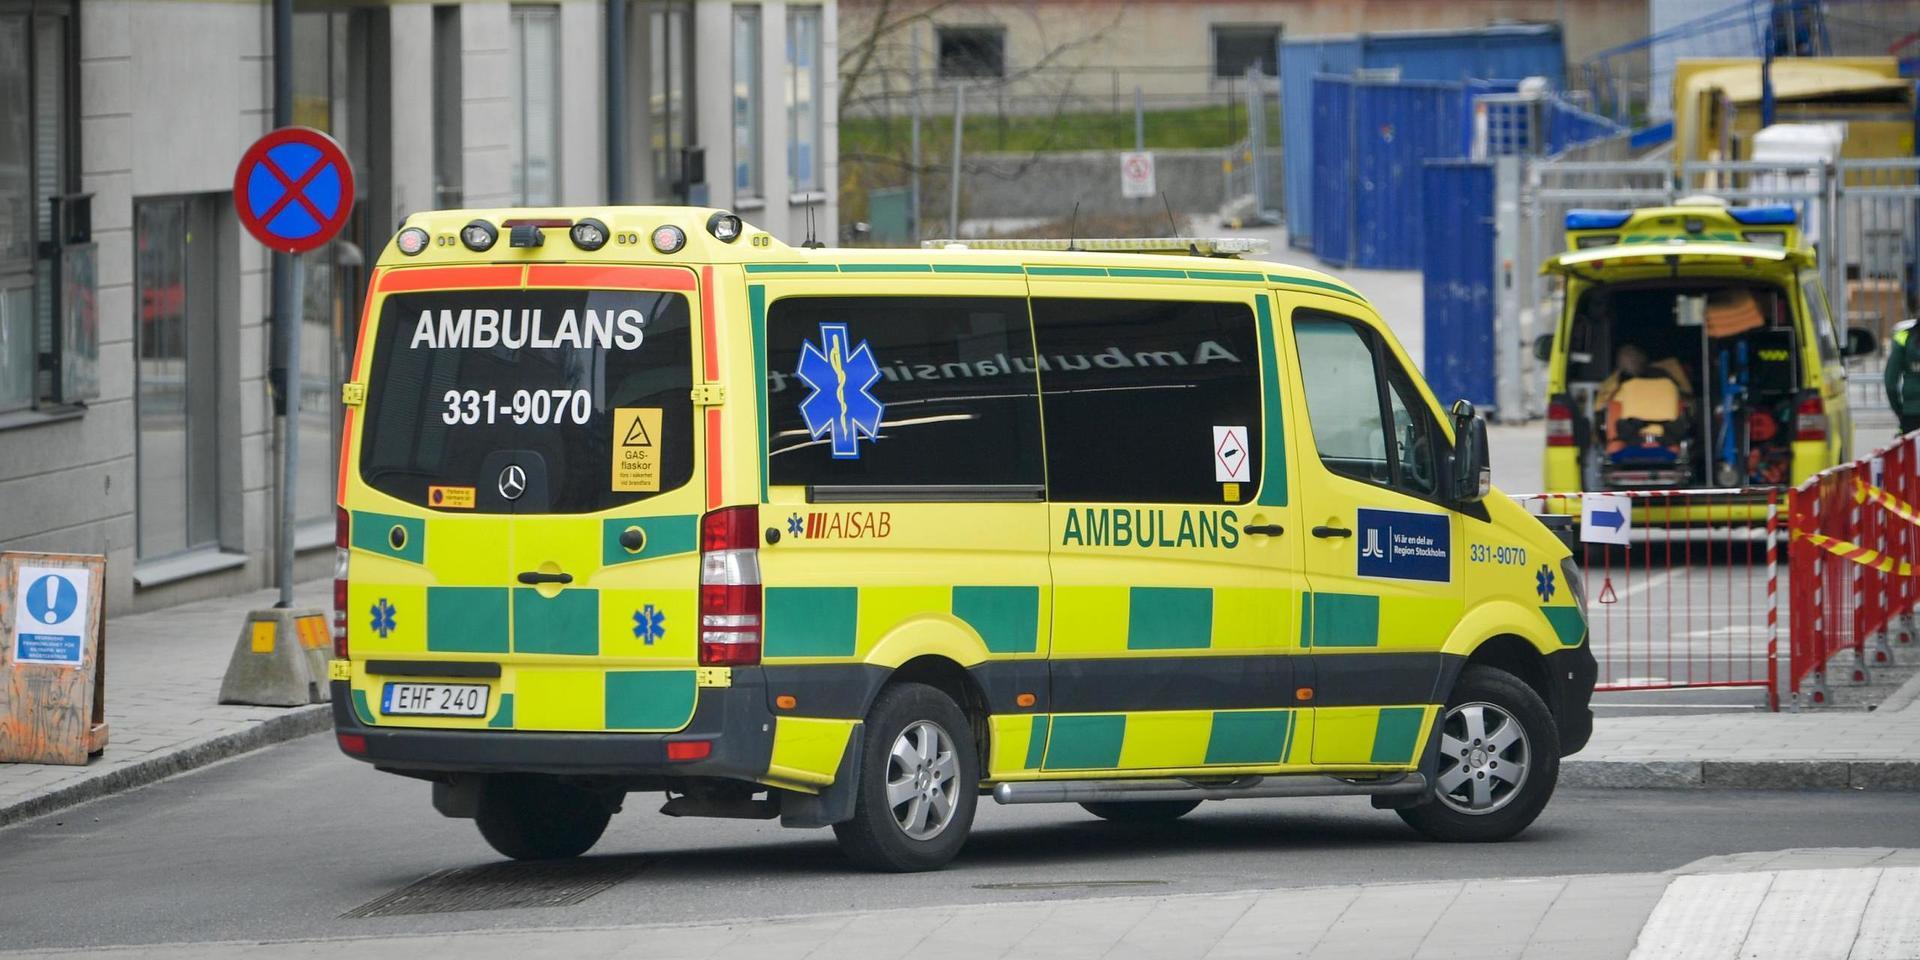 ”I många regioner, som i Region Halland, är det ambulanspersonalen själv som sköter saneringen.” 